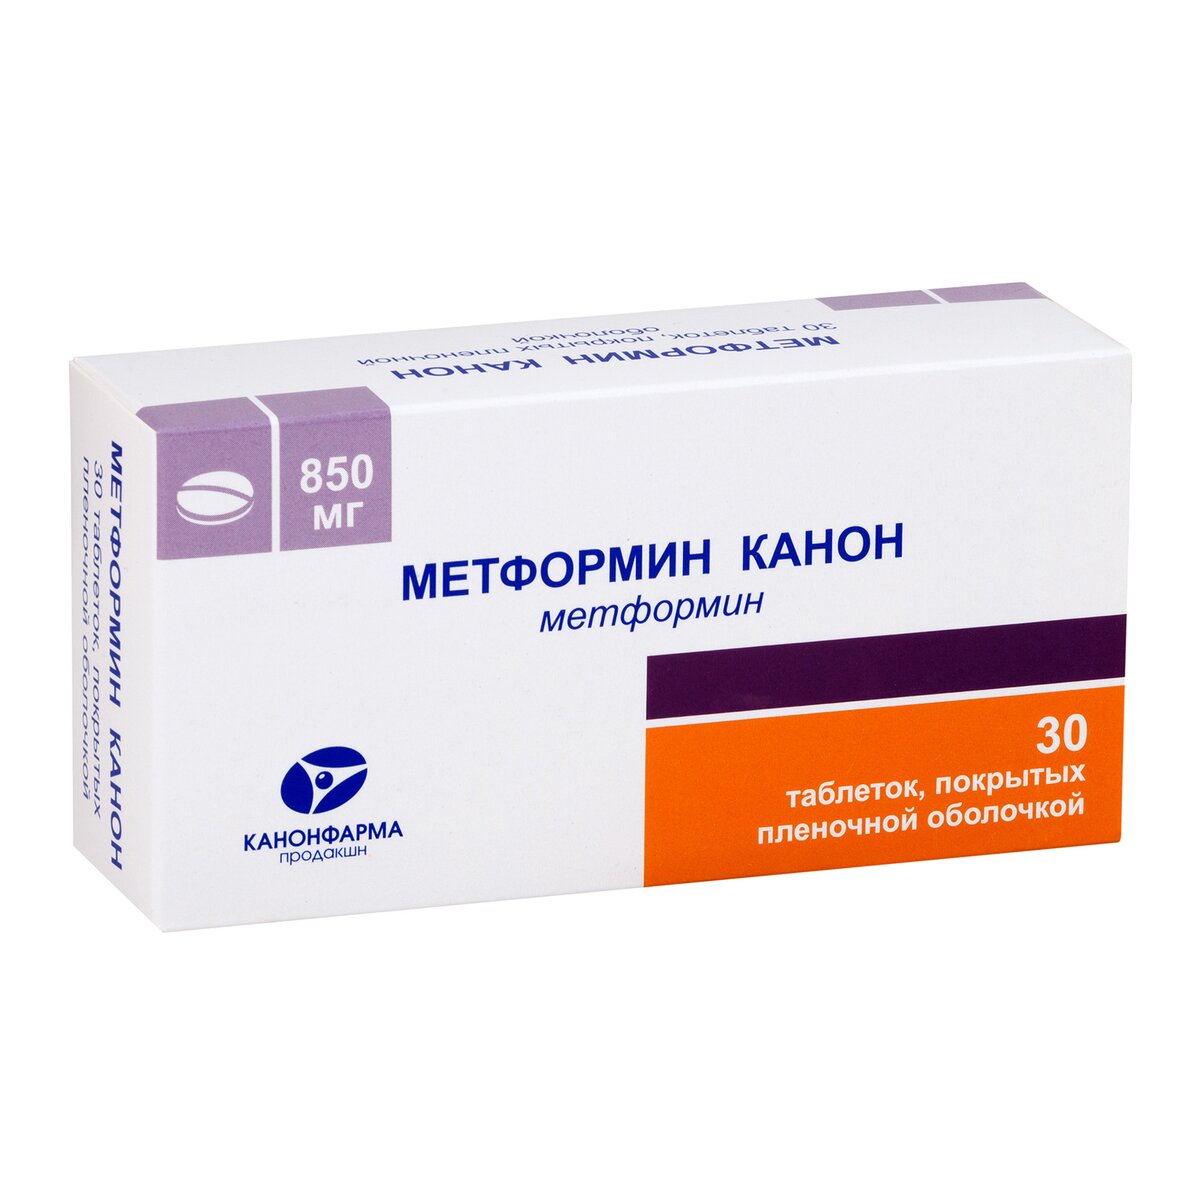 Метформин Канон таблетки 850 мг 30 шт.